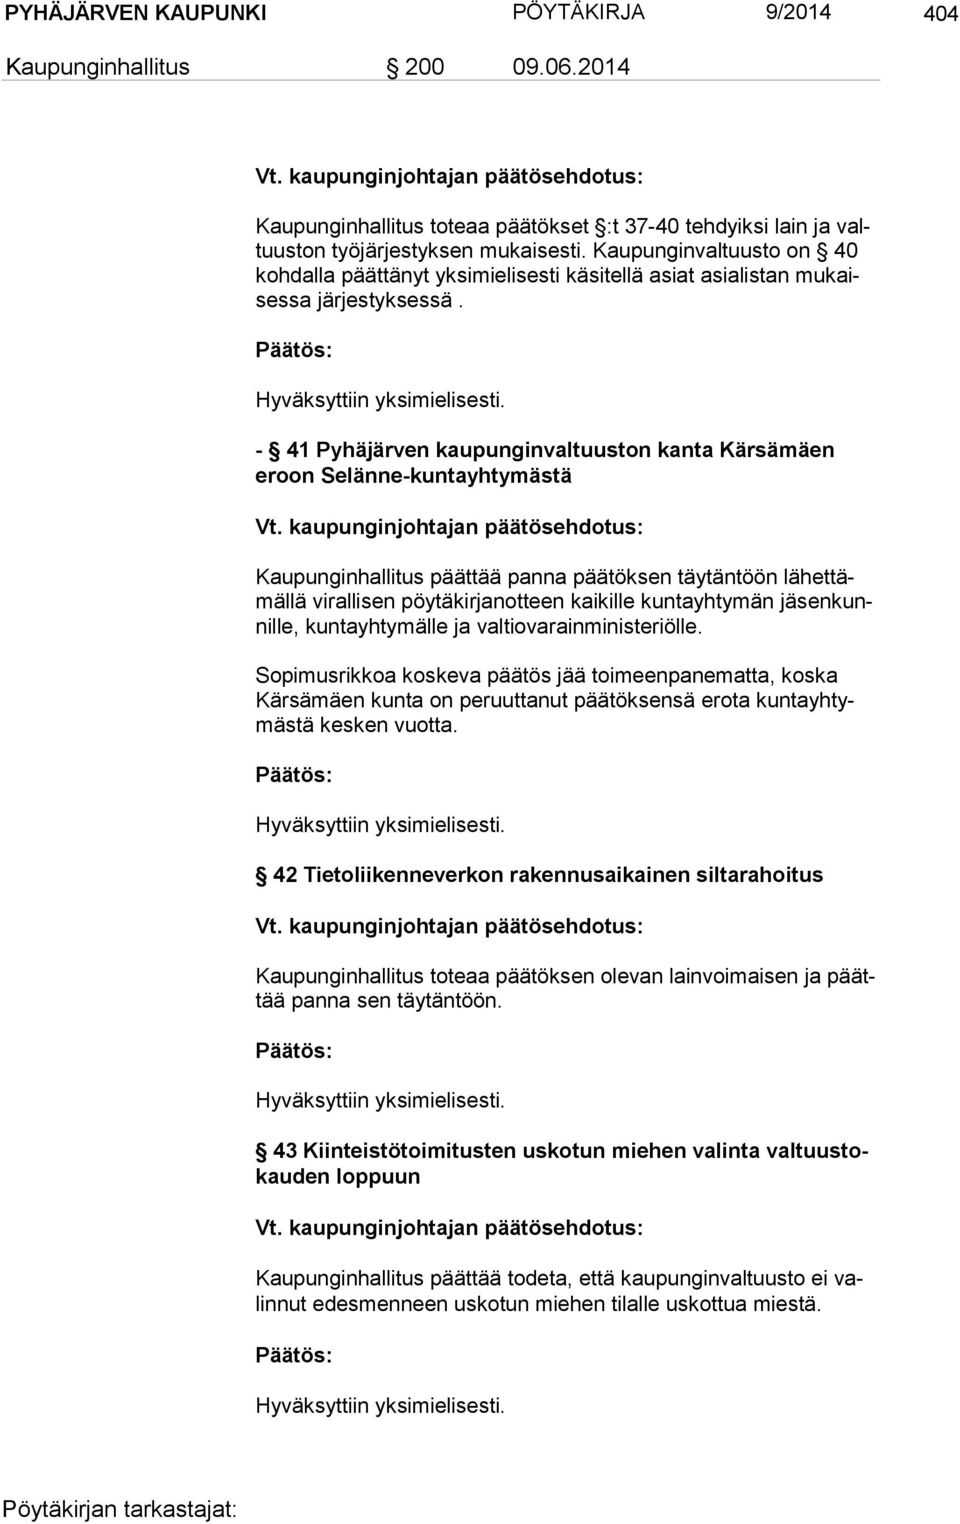 - 41 Pyhäjärven kaupunginvaltuuston kanta Kärsämäen eroon Selänne-kuntayhtymästä Kaupunginhallitus päättää panna päätöksen täytäntöön lä het tämäl lä virallisen pöytäkirjanotteen kaikille